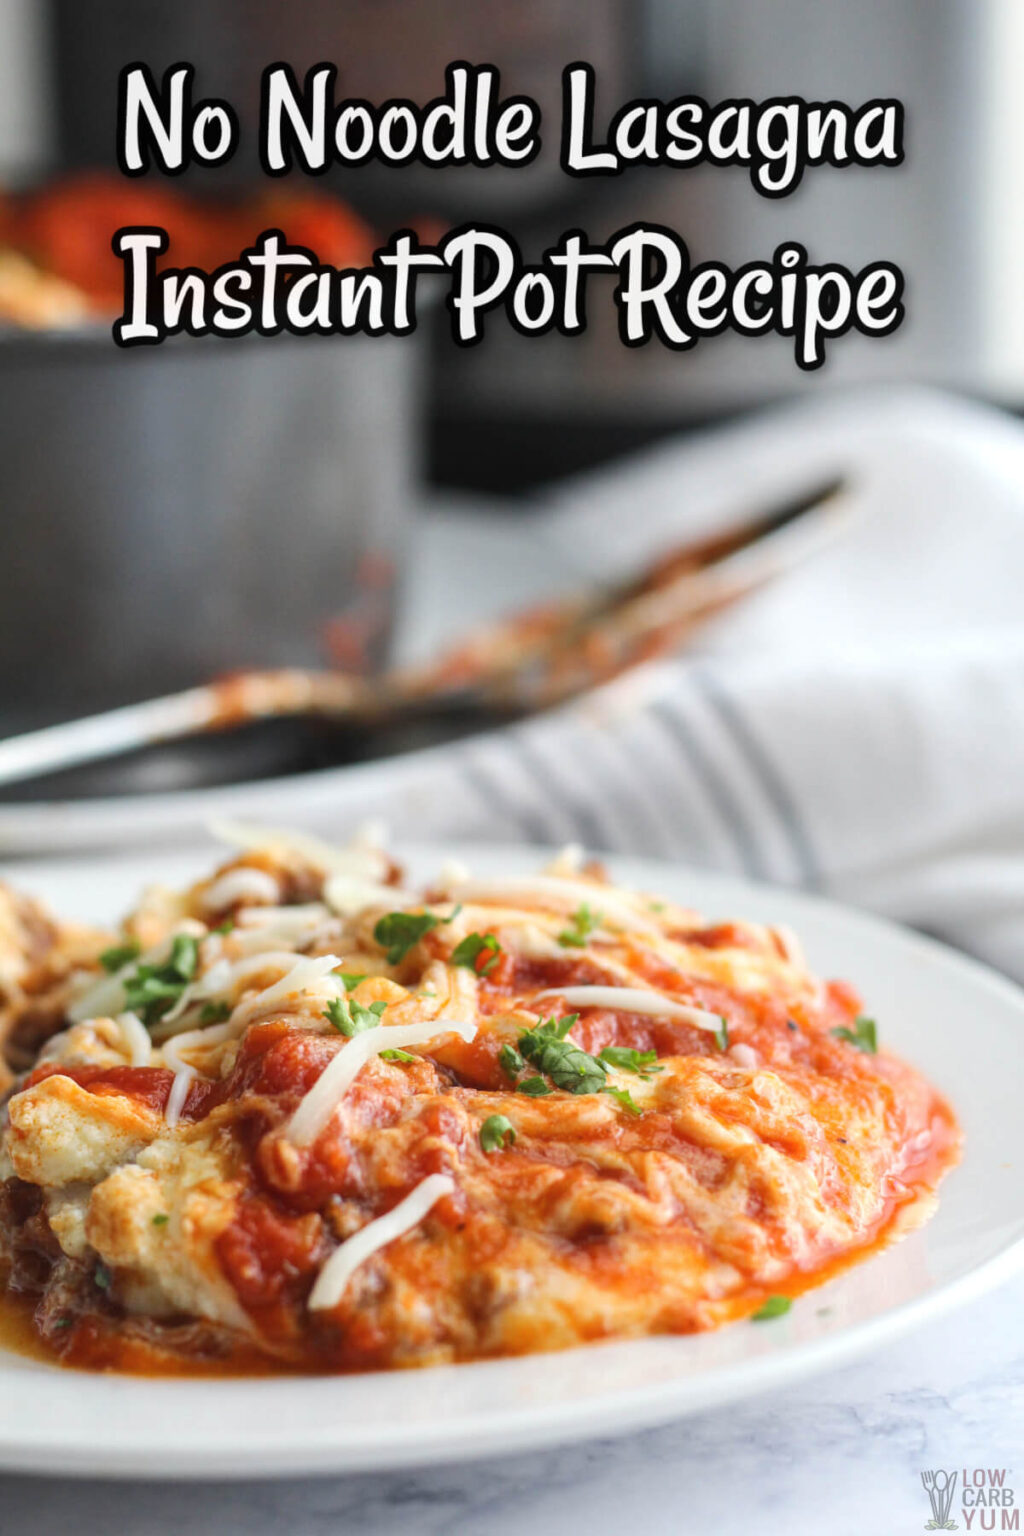 Keto Instant Pot Lasagna Recipe Without Noodles - Low Carb Yum